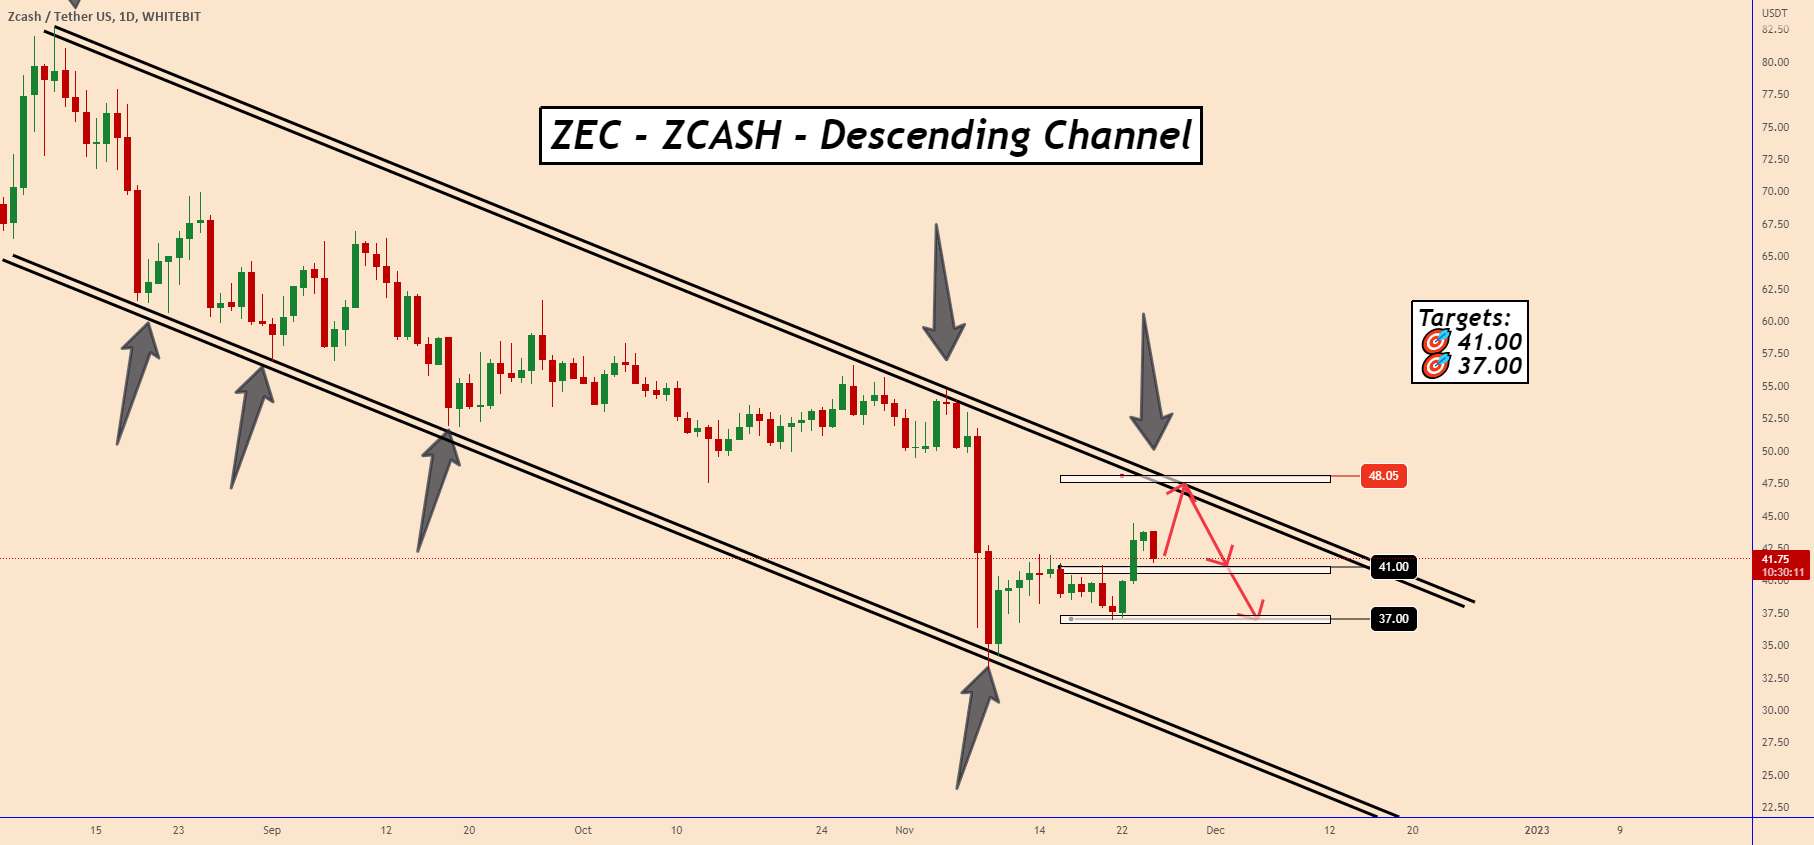  تحلیل زد كش - ZEC (Zcash): قیمت همچنان به کاهش حجم خود ادامه می دهد